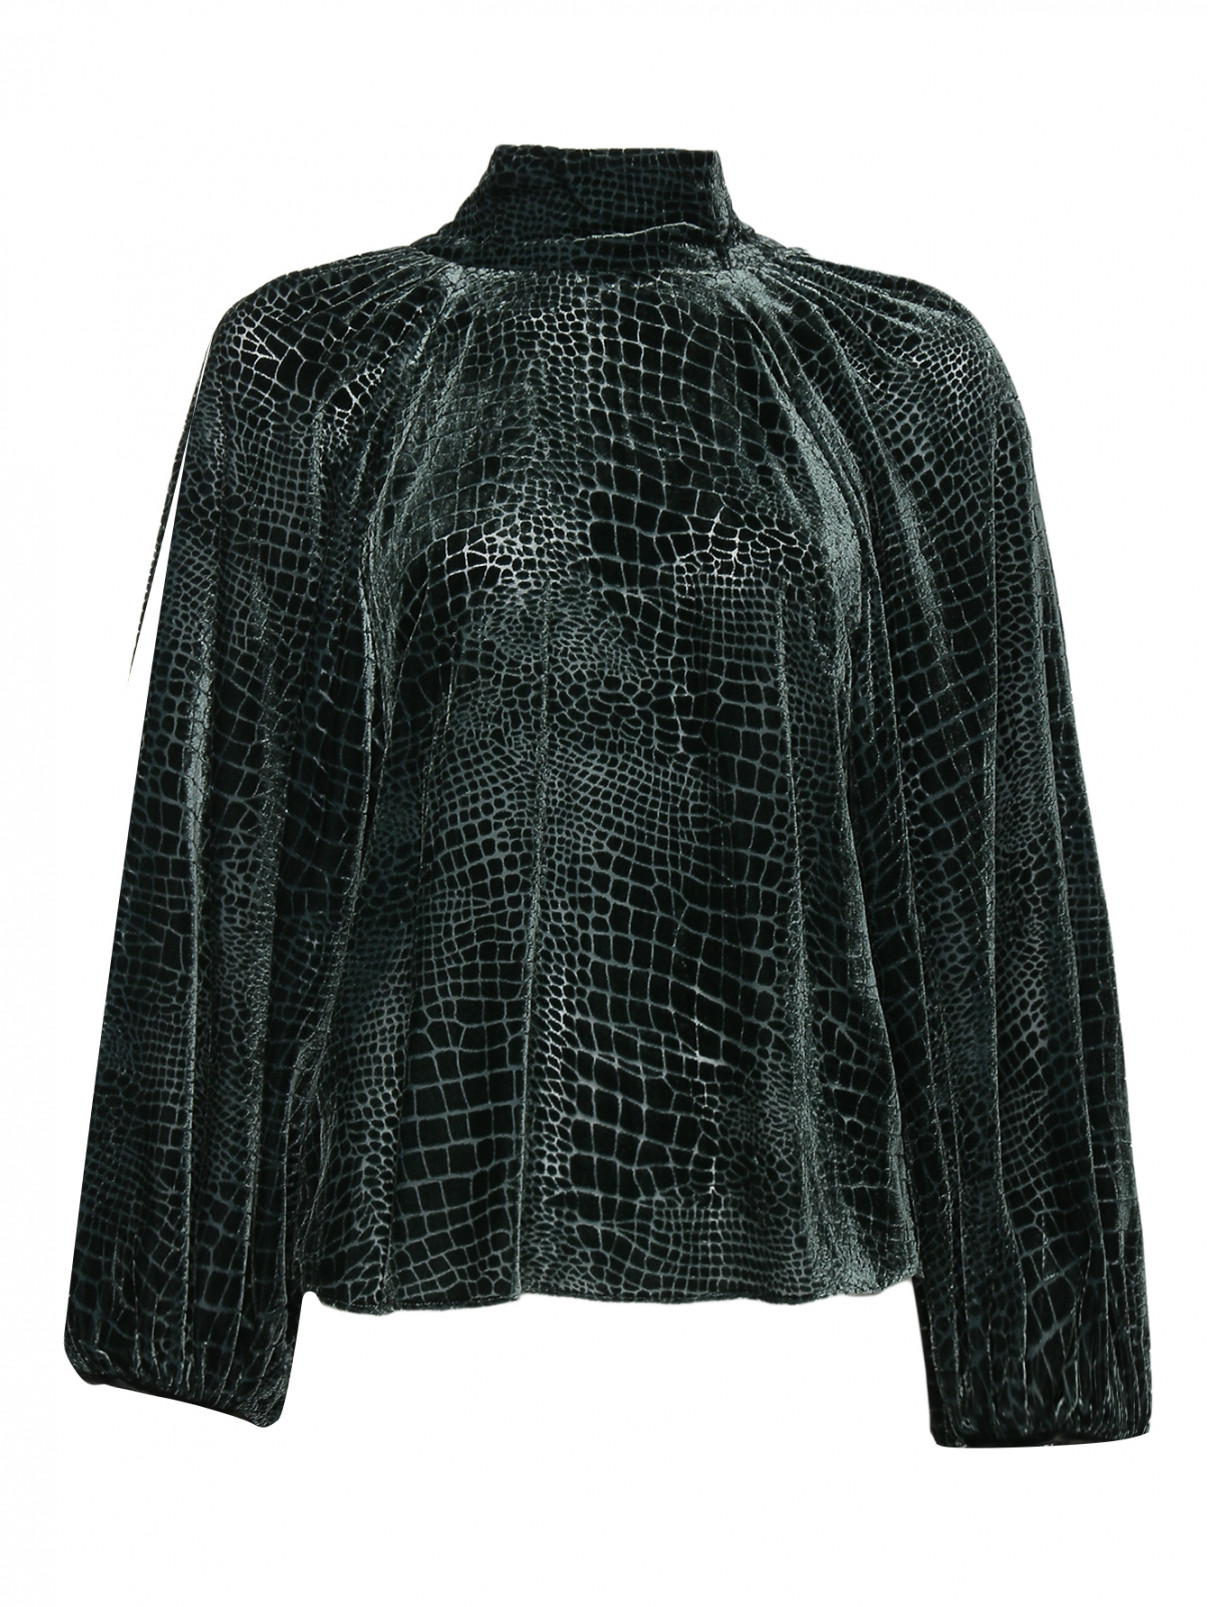 Блуза свободного кроя с узором Dorothee Schumacher  –  Общий вид  – Цвет:  Зеленый